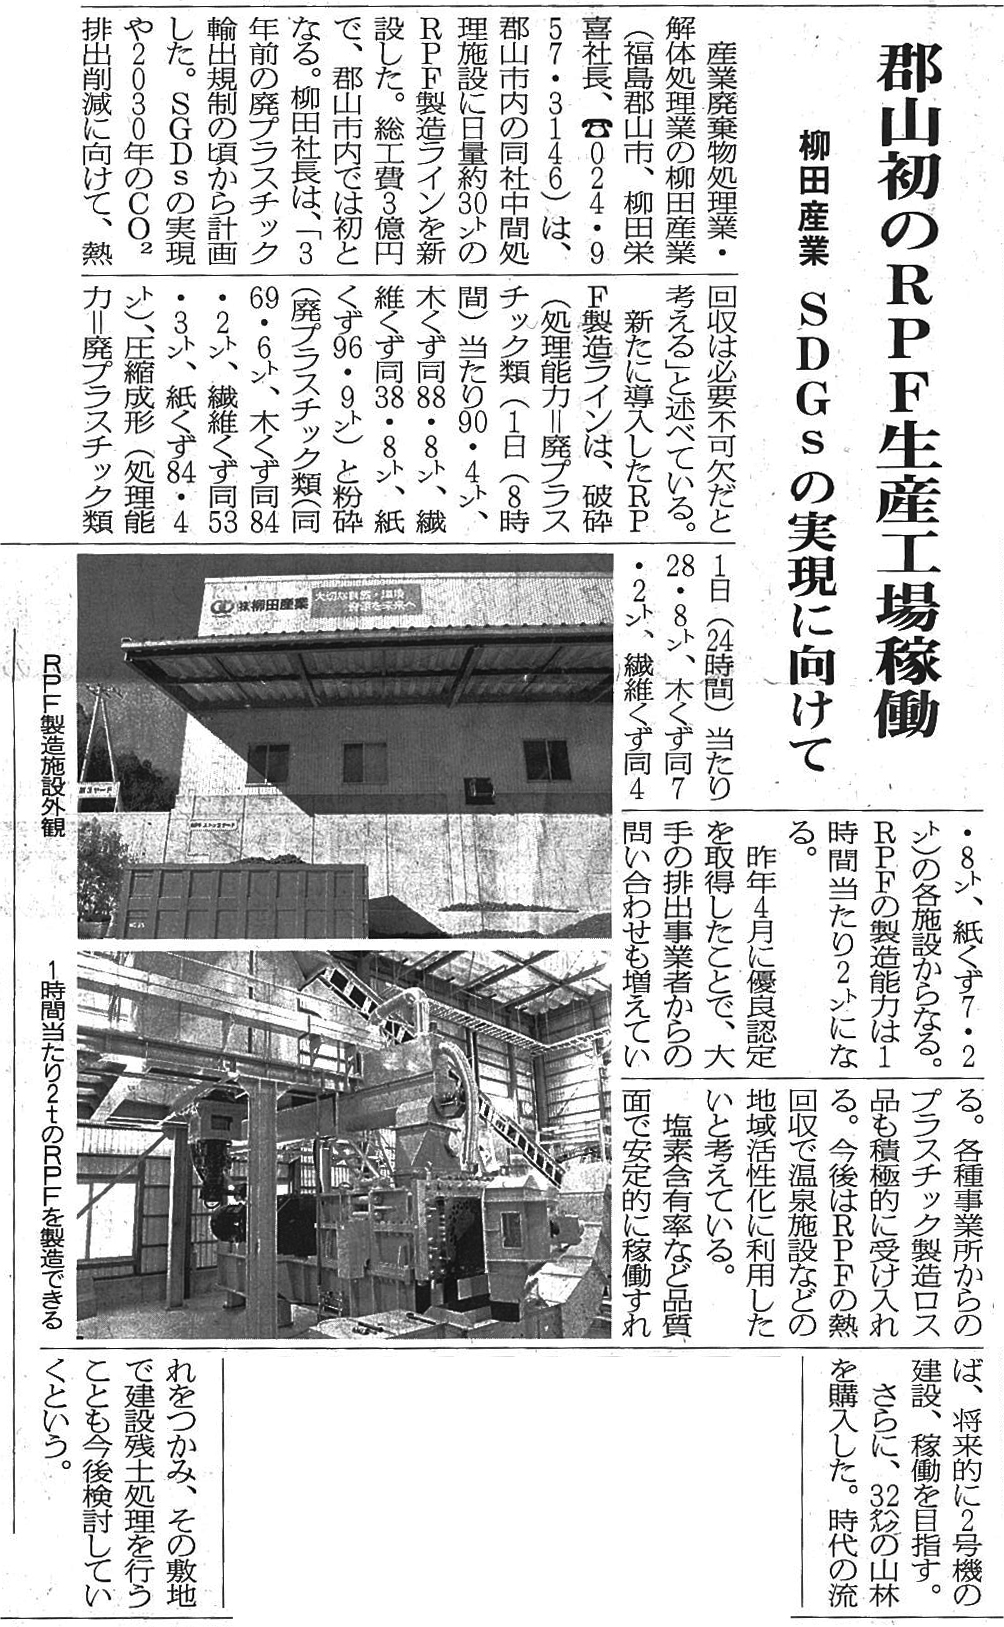 1/17日循環経済新聞に掲載されました「郡山初のRPF生産工場稼働」